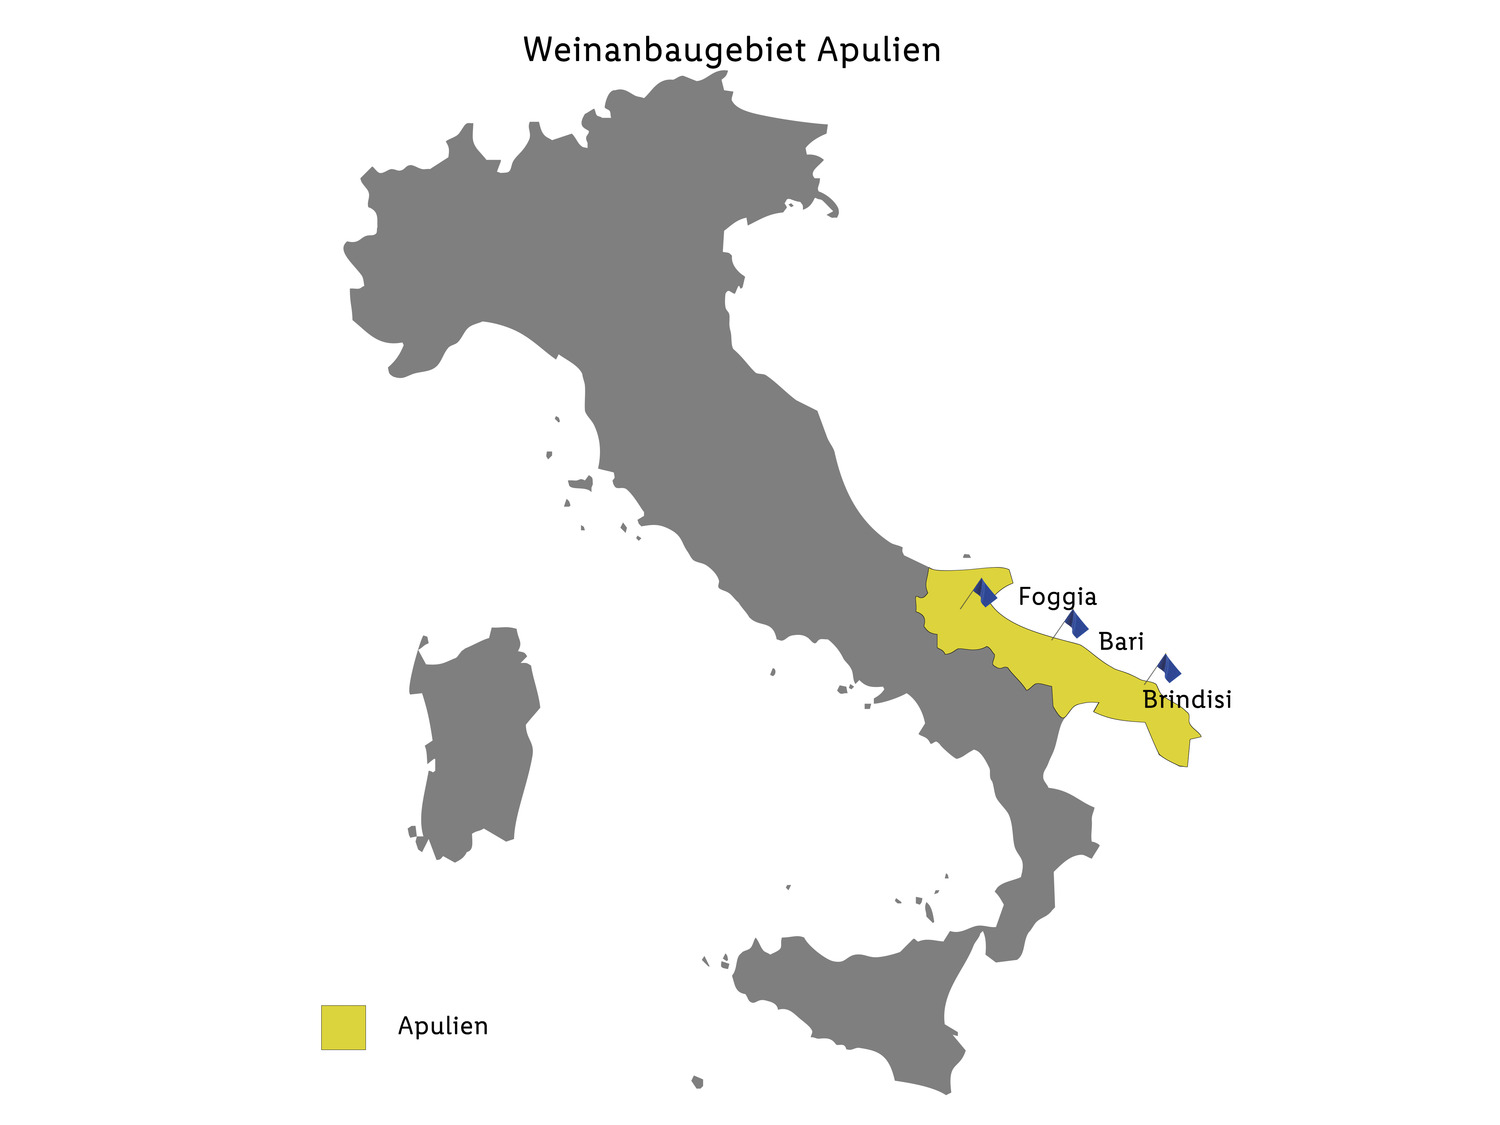 Corte Aurelio Chardonnay Puglia IGP trocken, Weißwein …